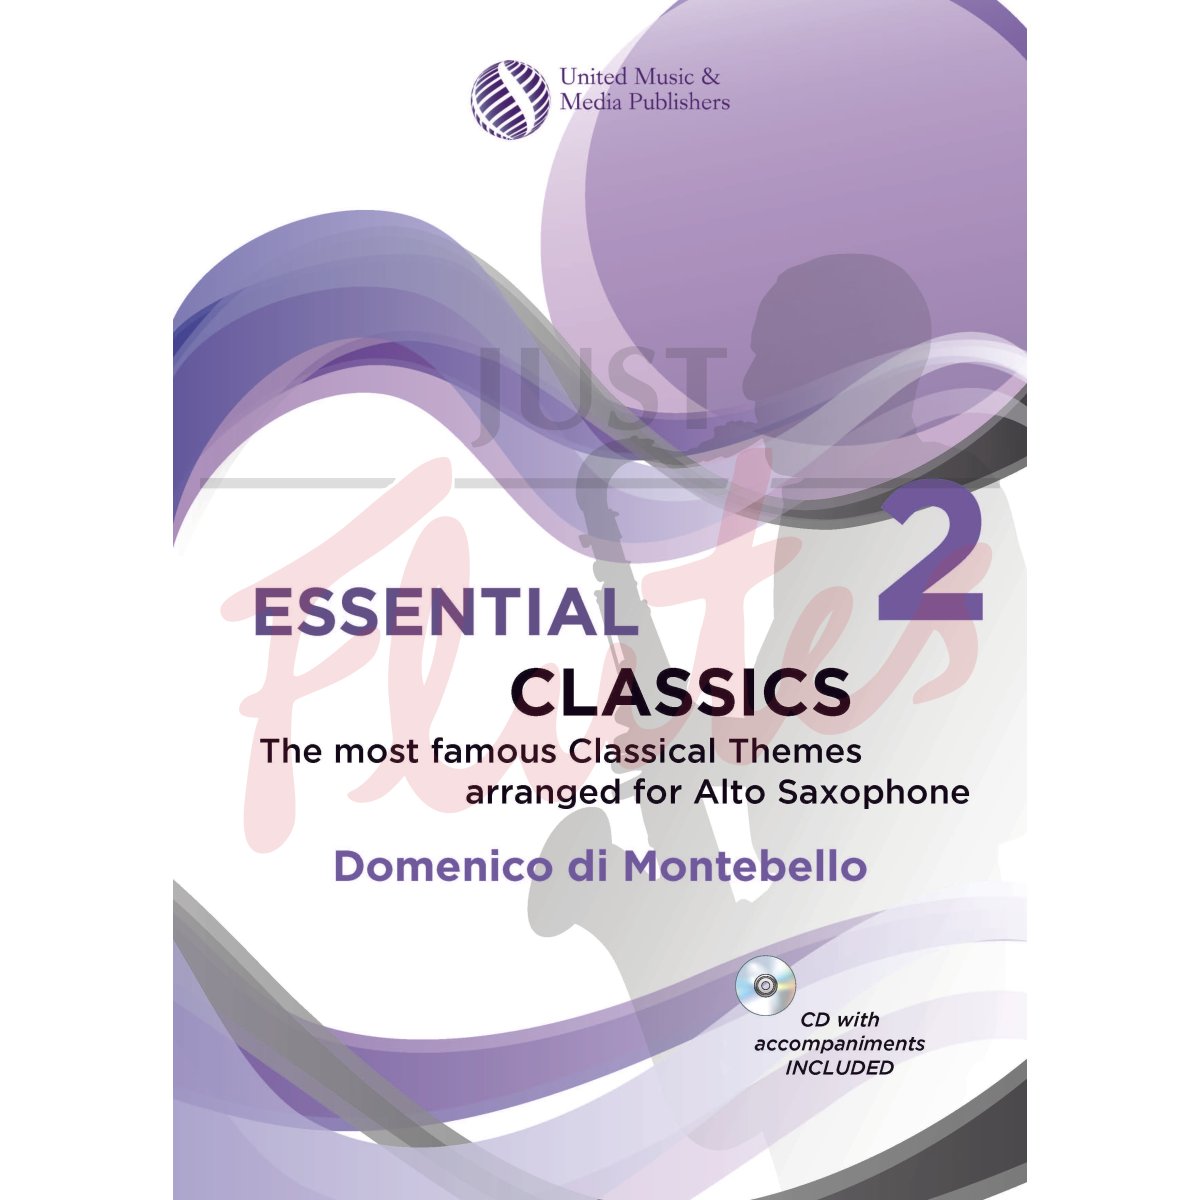 Essential Classics 2 for Saxophone